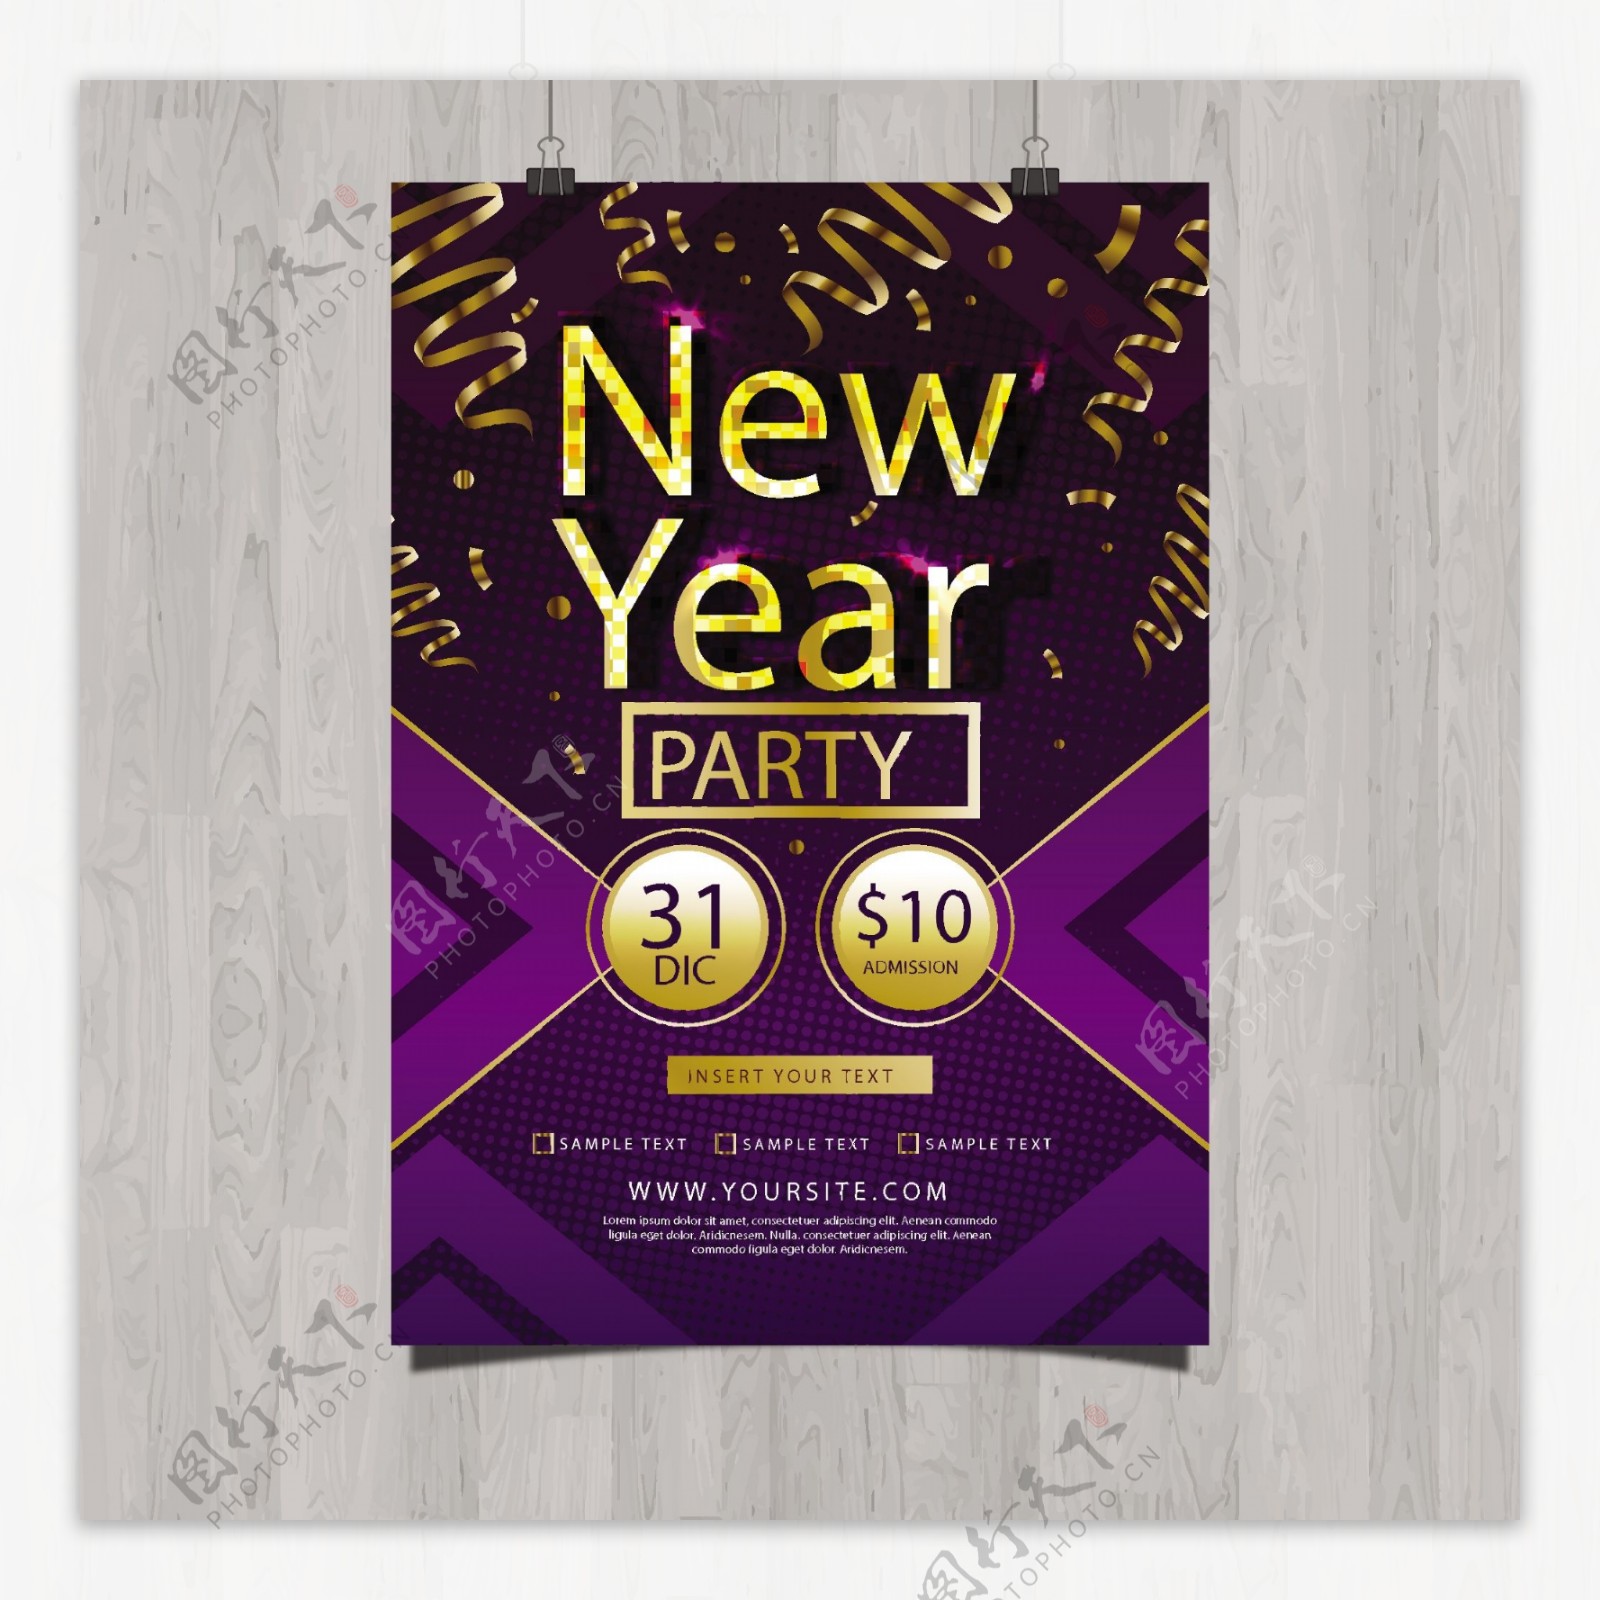 金色和紫色新年派对海报模板